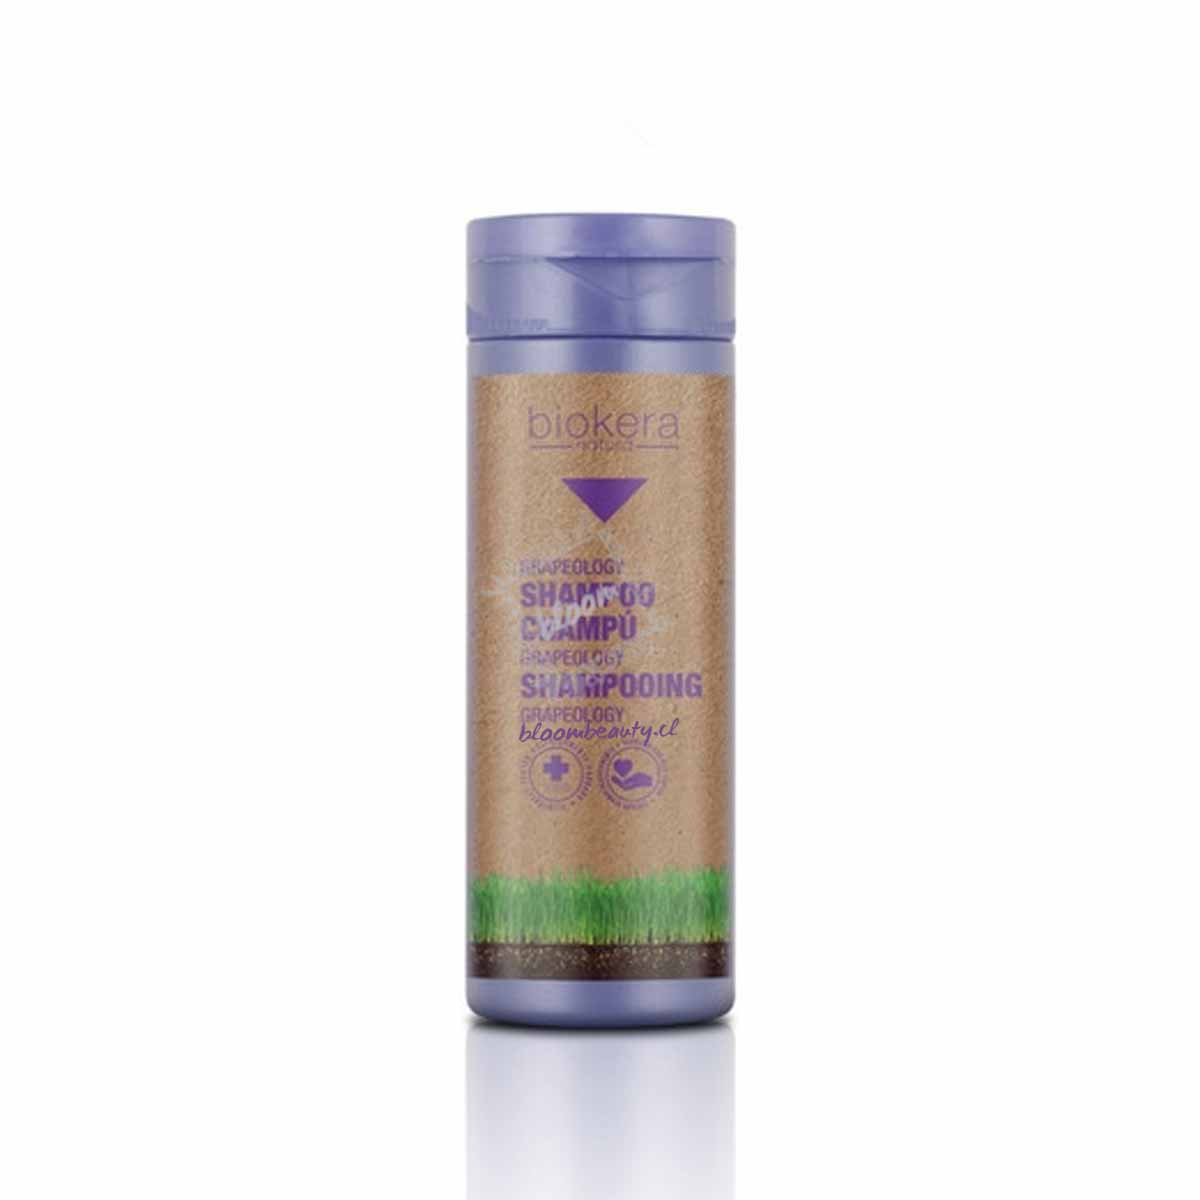 SALERM Shampoo Grapeology Biokera 100 ml – Bloom Beauty